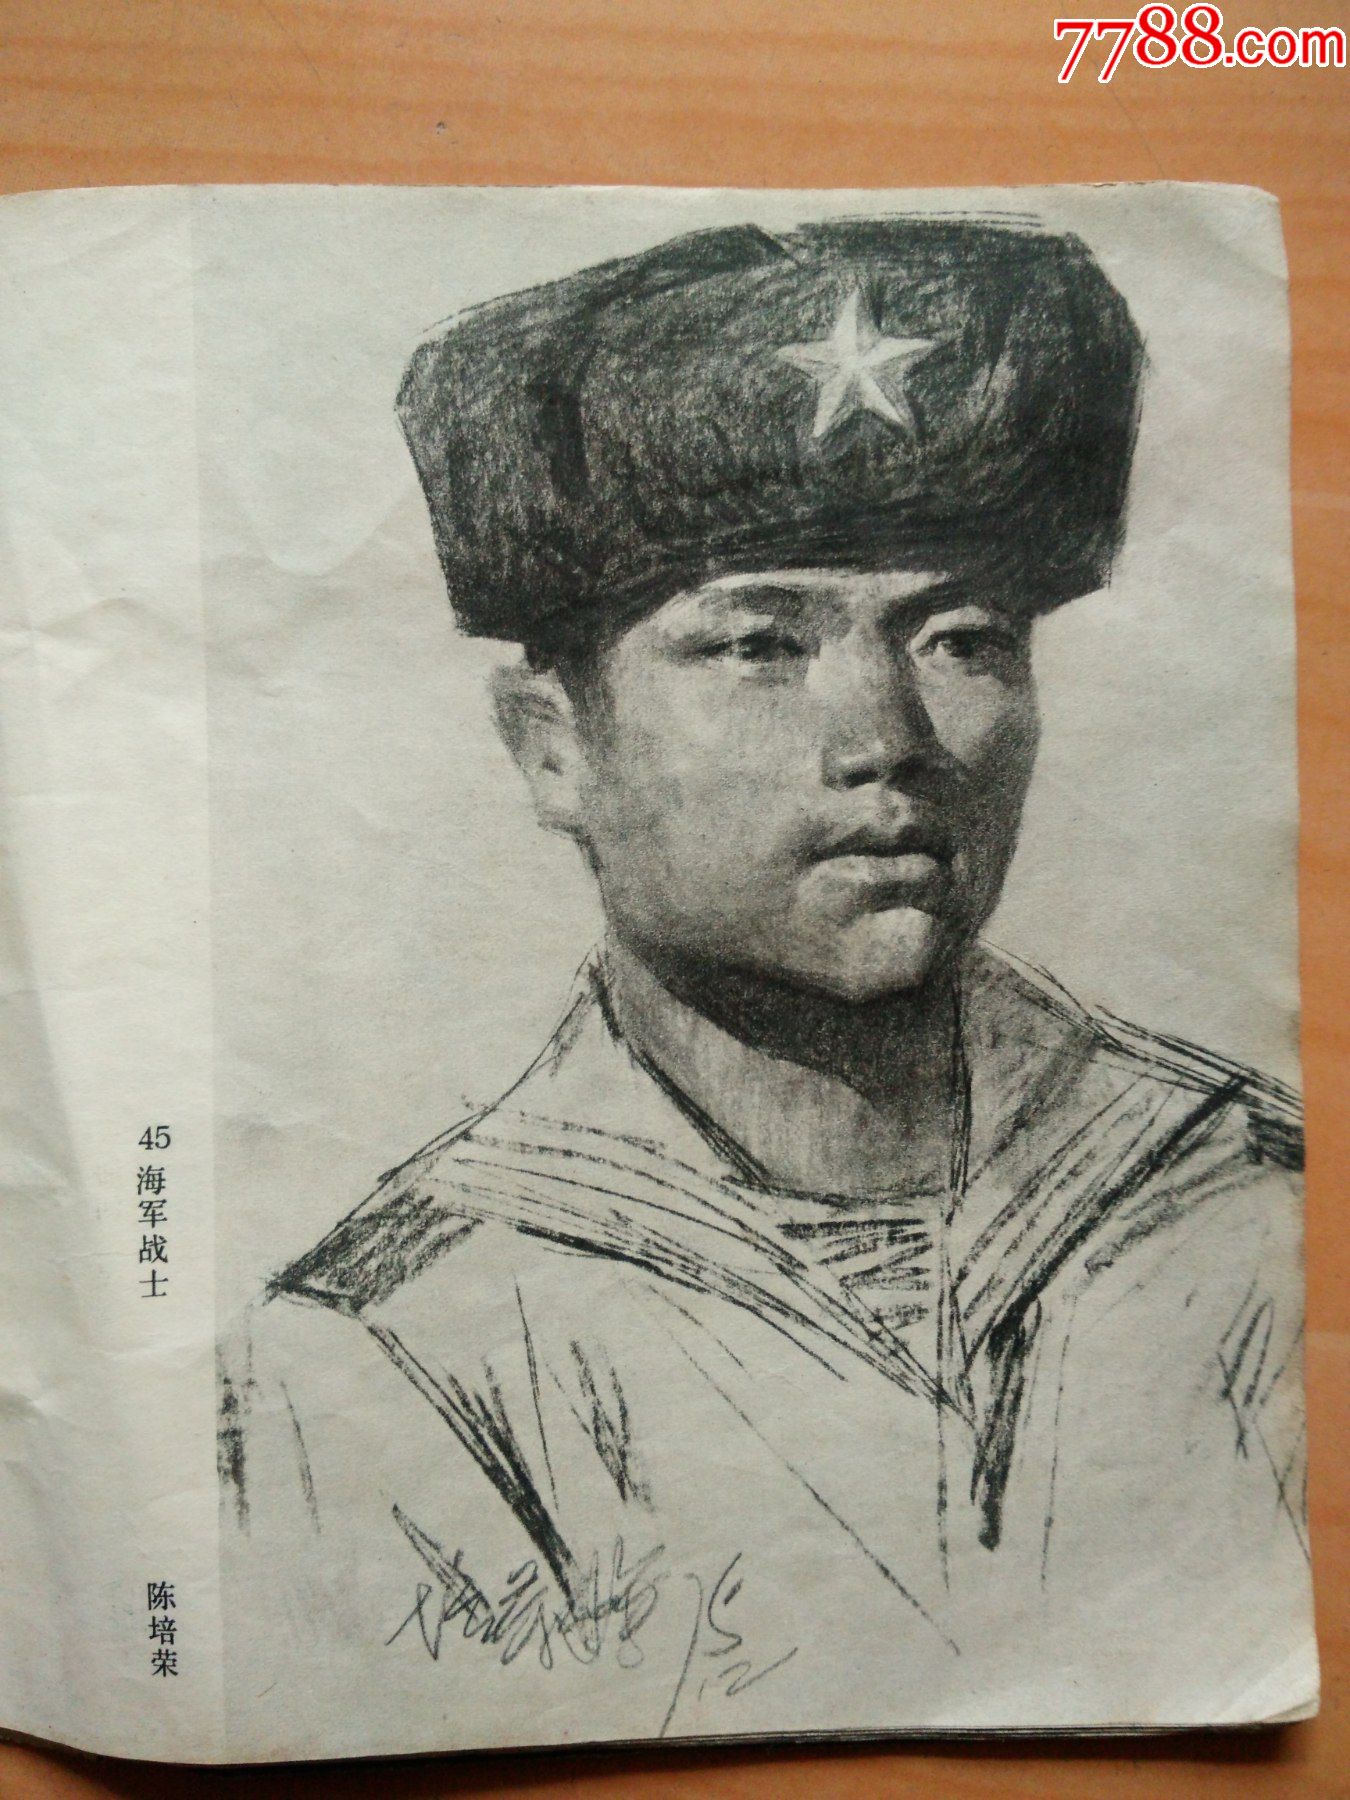 画页人物素描1海军战士作者陈培荣2司机作者廖炯模